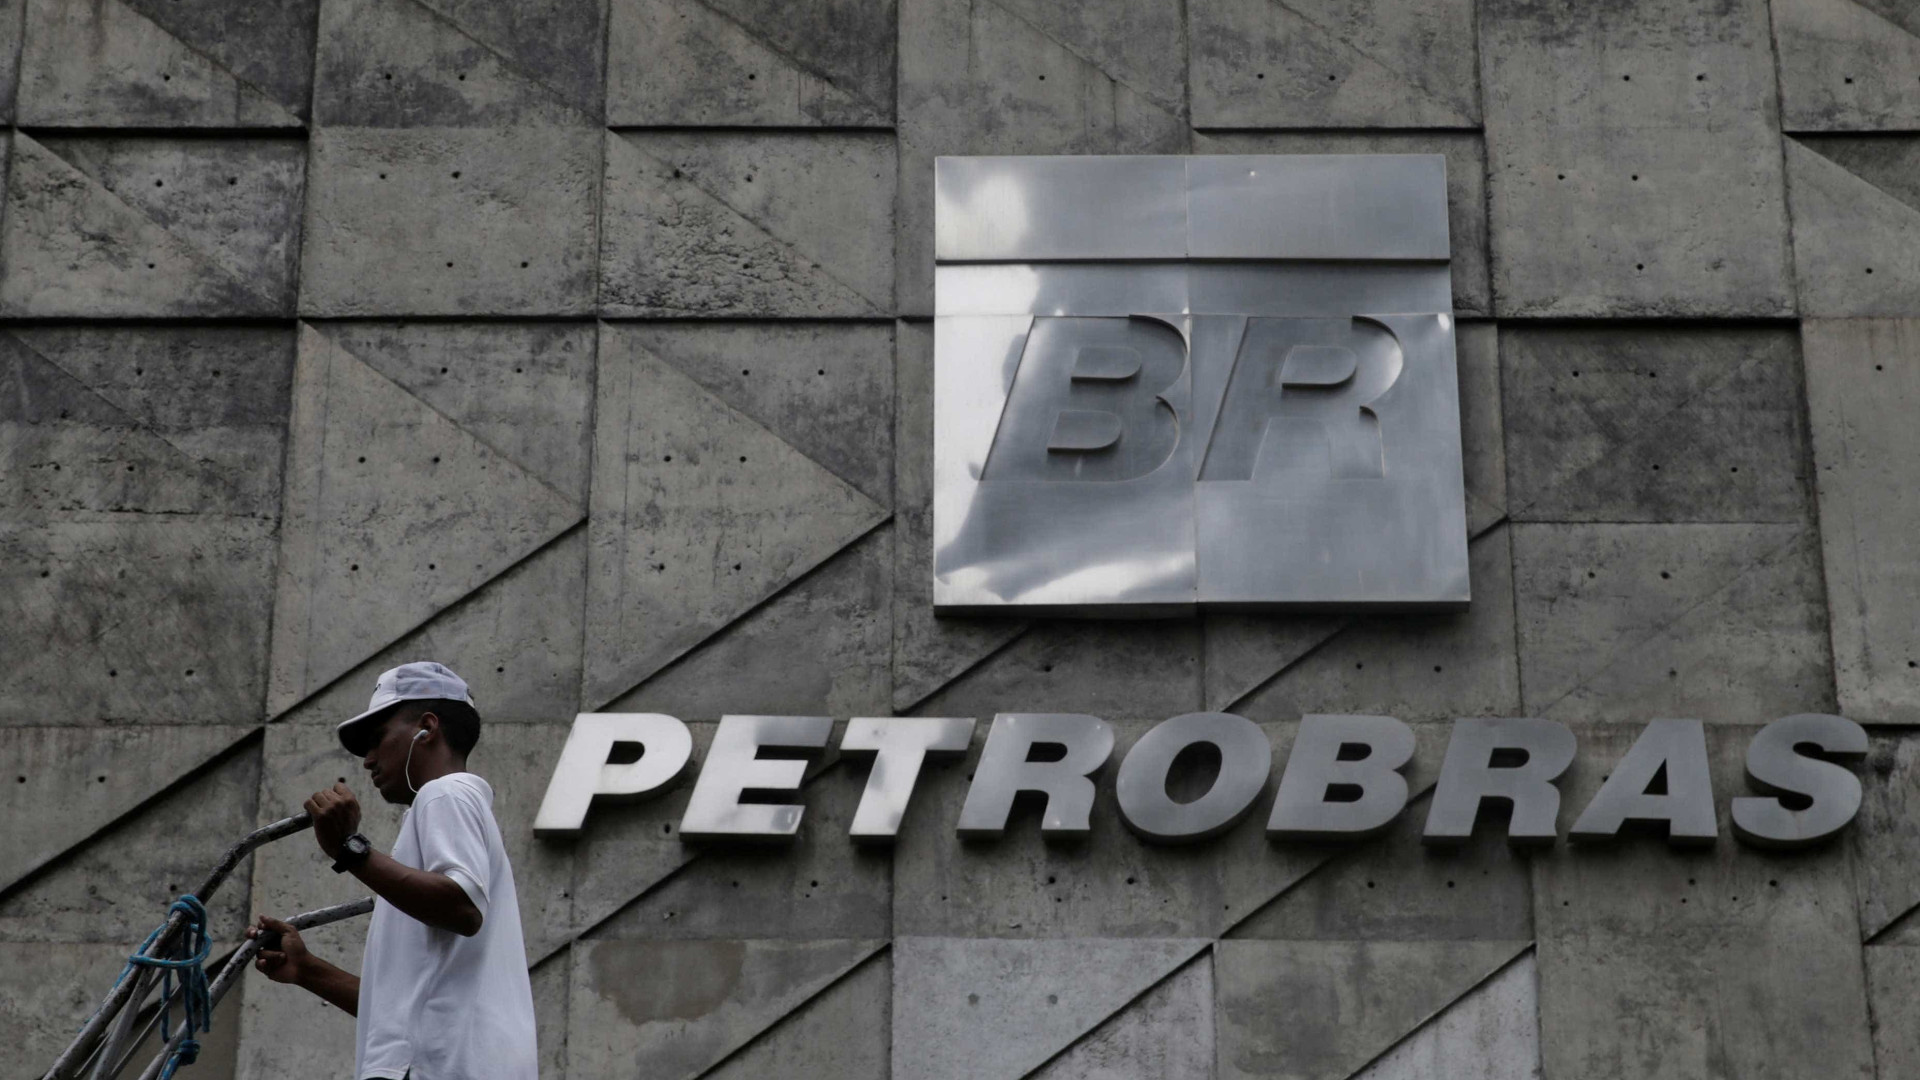 Petrobras bate recorde de produção, com 2,15 milhões de barris por dia